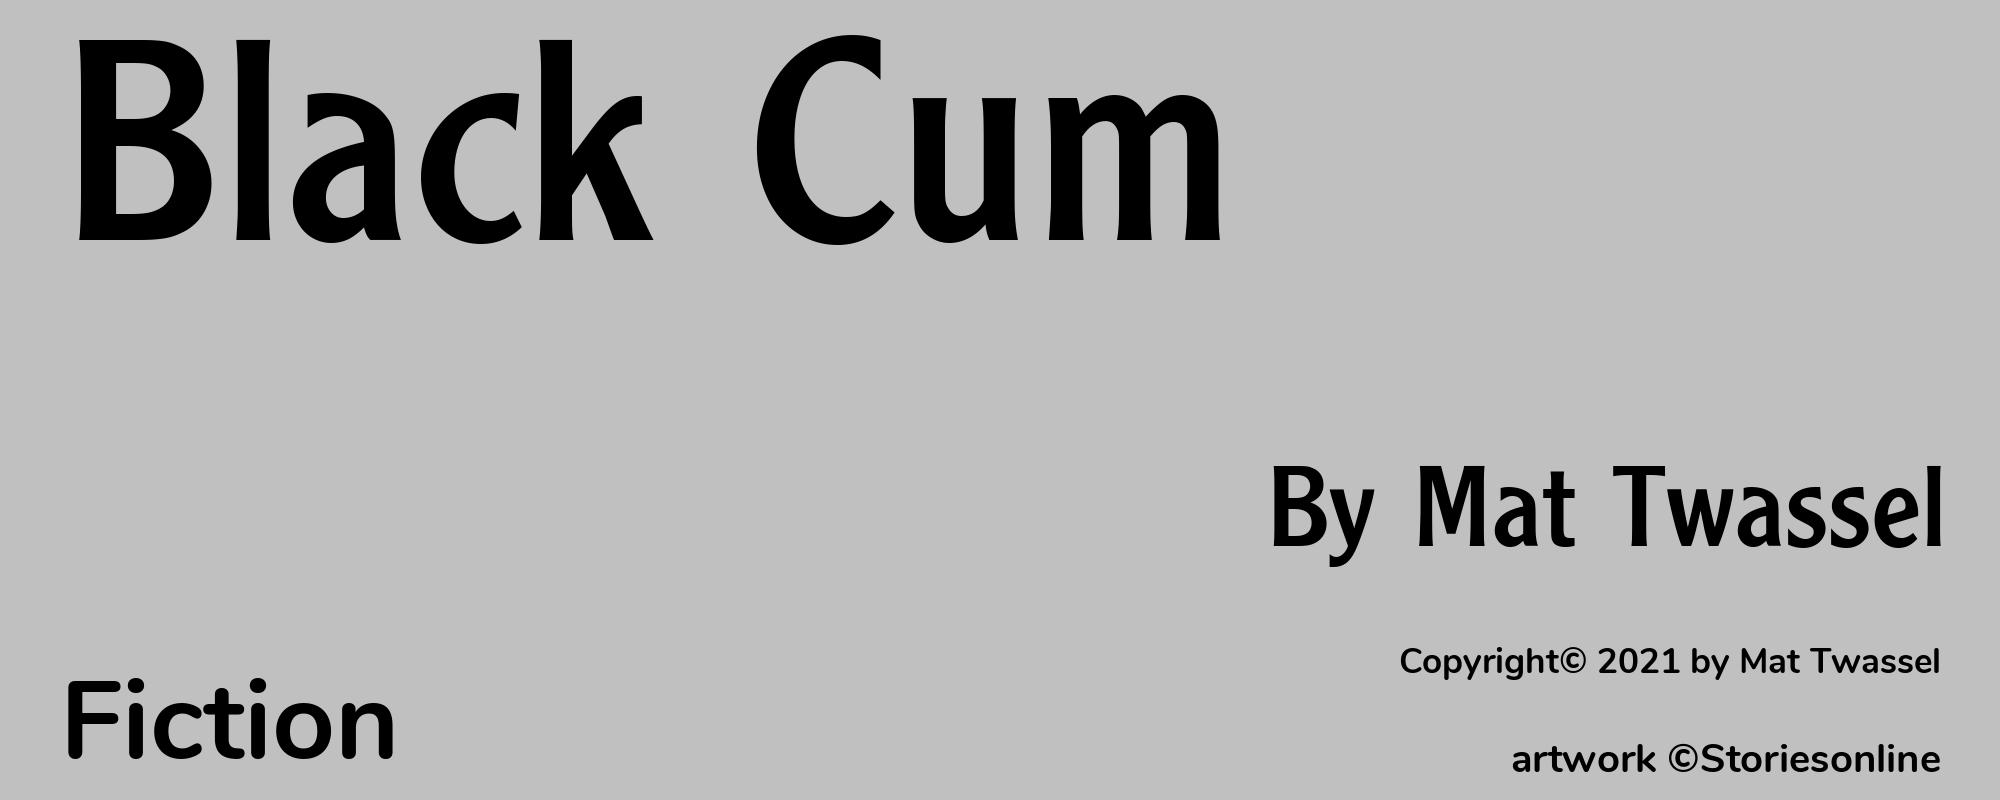 Black Cum - Cover